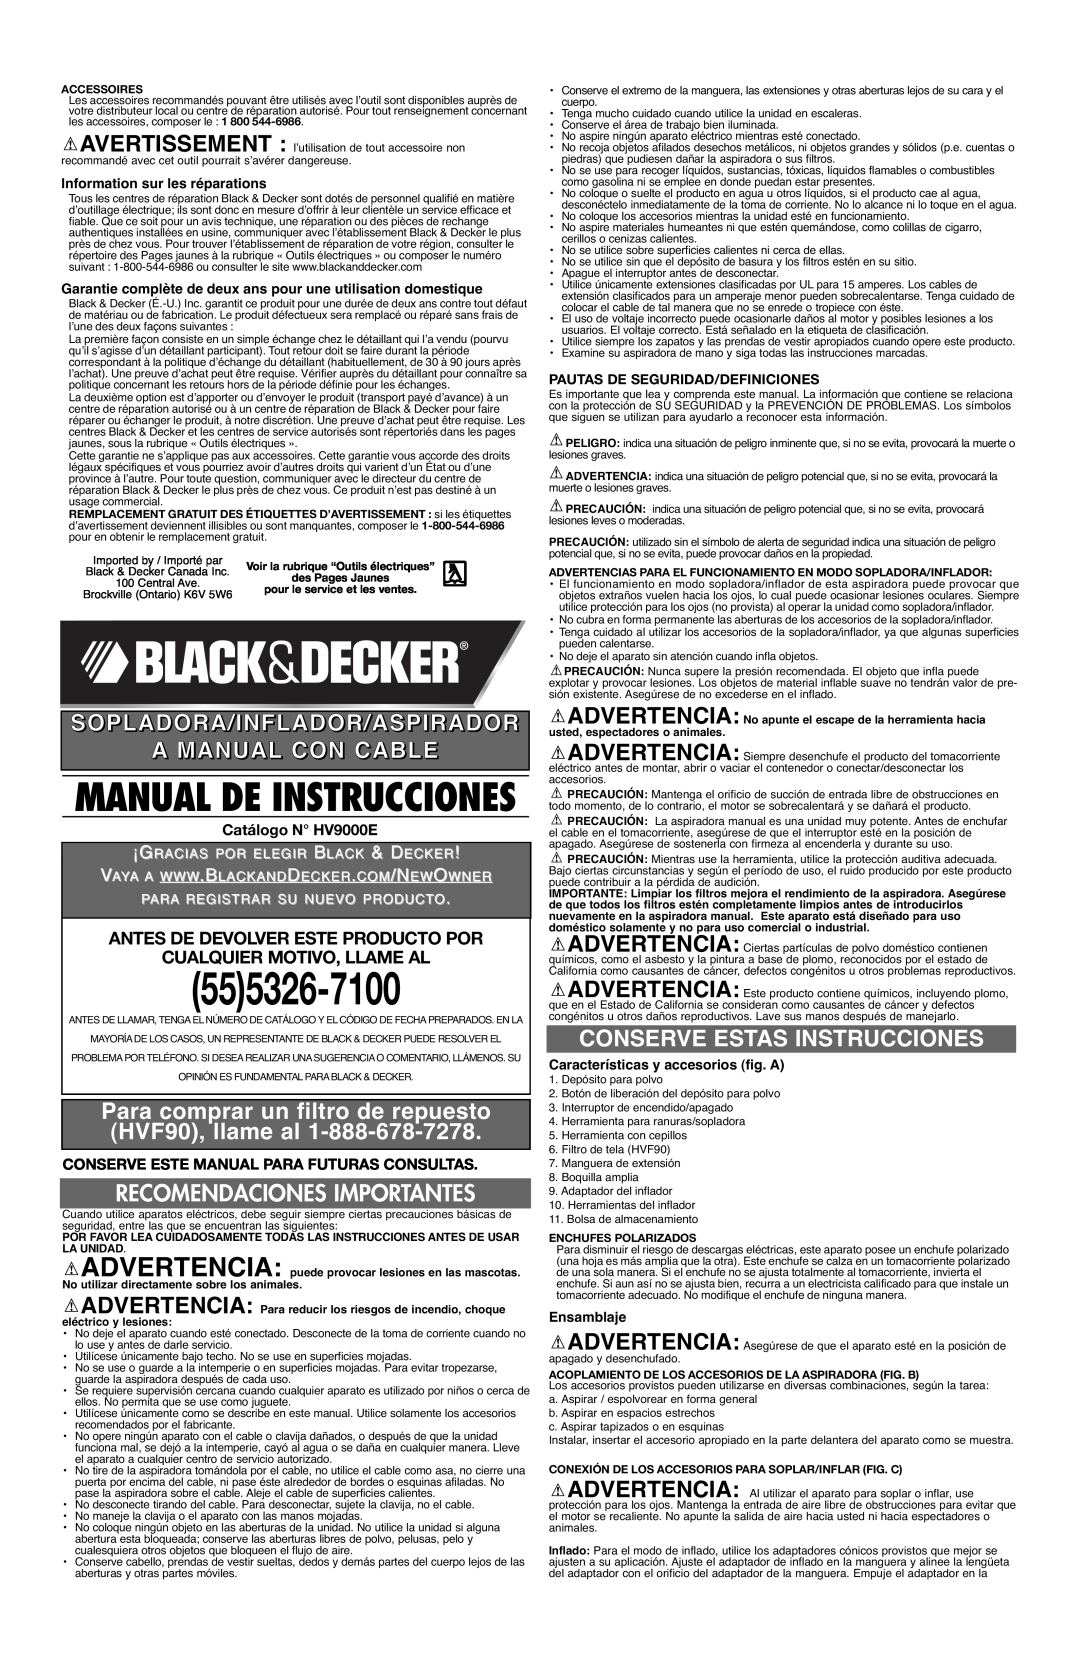 Black & Decker Manual De Instrucciones, Sopladora/Inflador/Aspirador A Manual Con Cable, Catálogo N HV9000E, Ensamblaje 